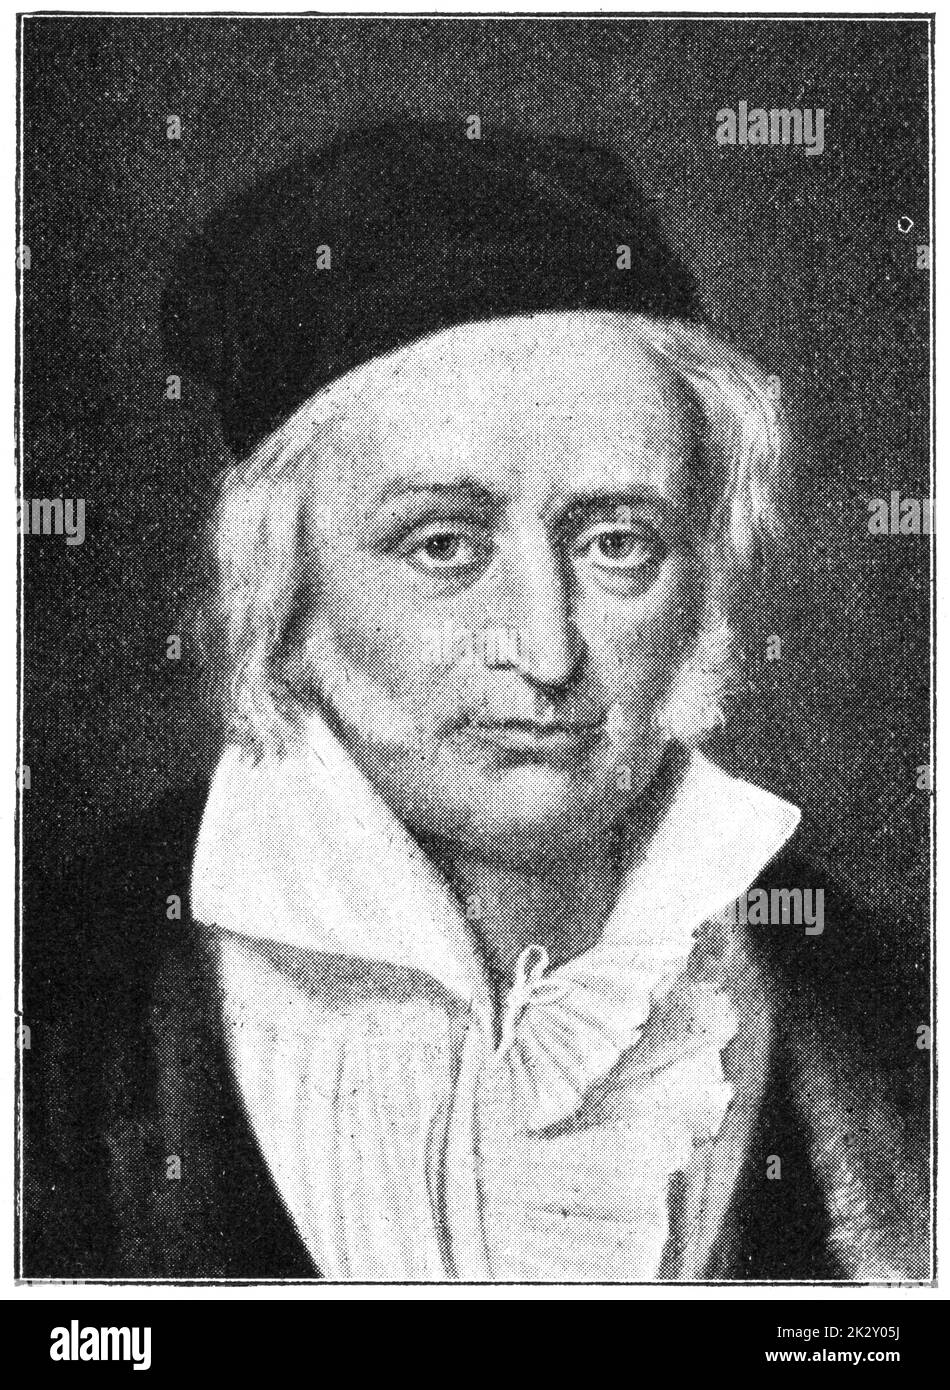 Ritratto di Johann Carl Friedrich Gauss - matematico e fisico tedesco. Illustrazione del 19 ° secolo. Germania. Sfondo bianco. Foto Stock